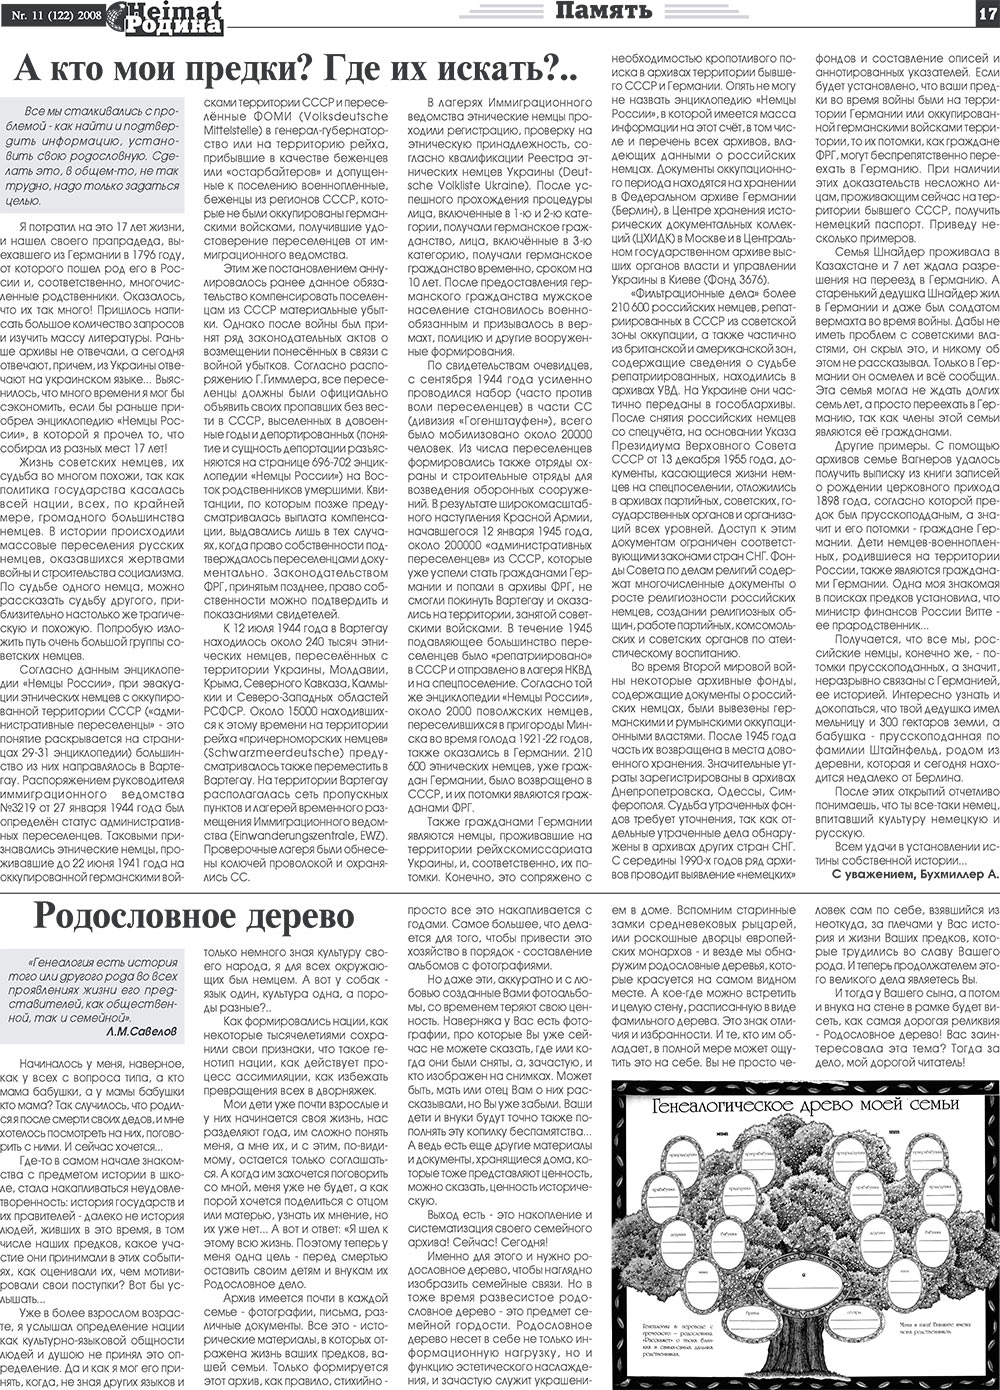 Heimat-Родина (газета). 2008 год, номер 11, стр. 17